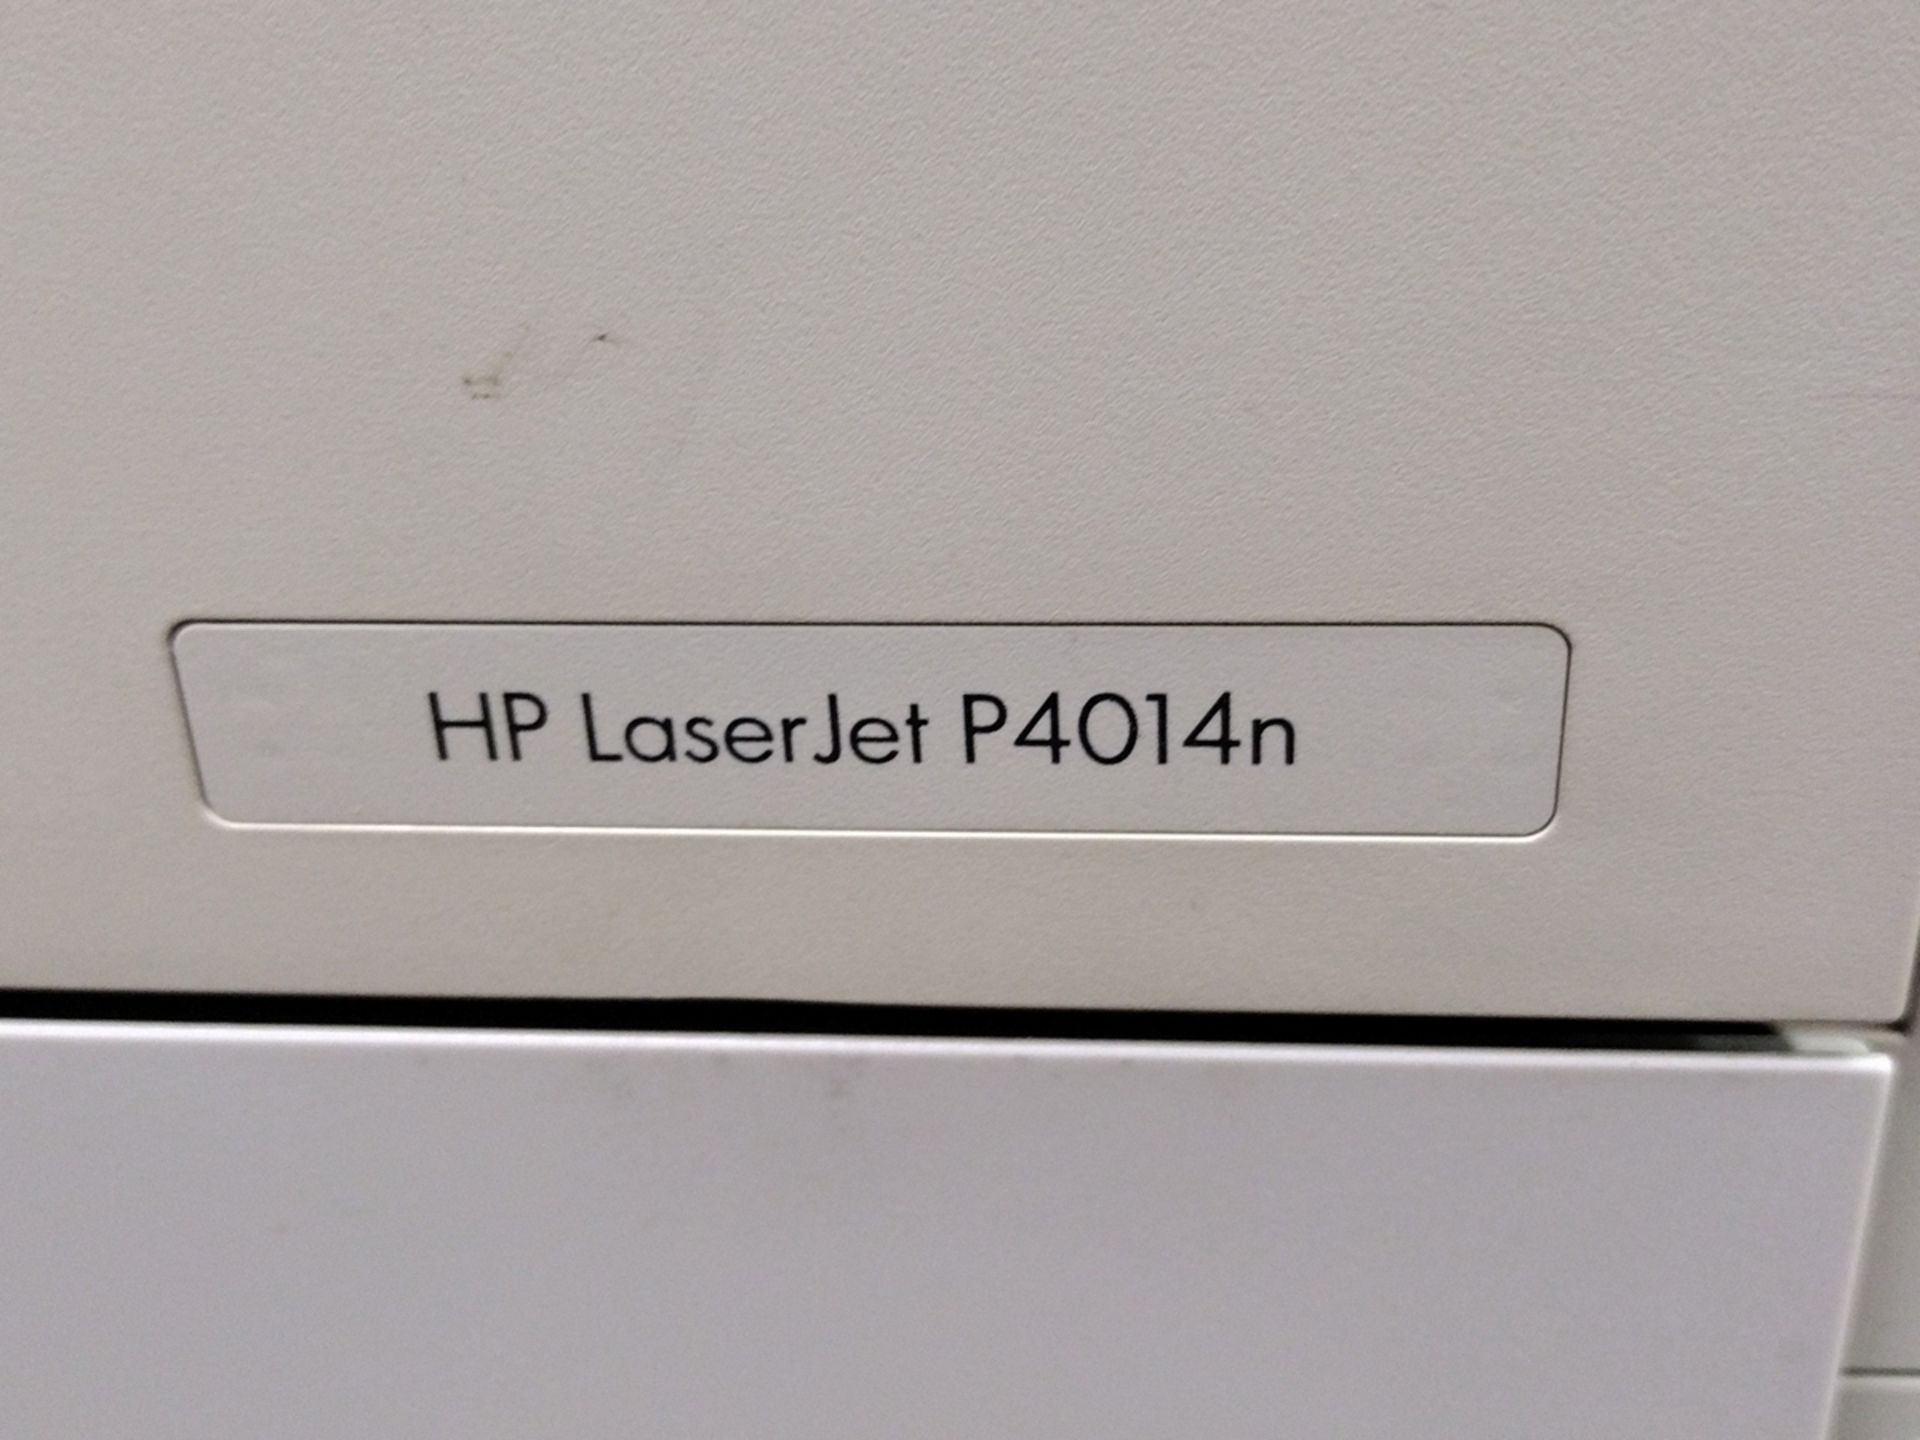 HP Laser Jet P4014n Printer - Image 3 of 3